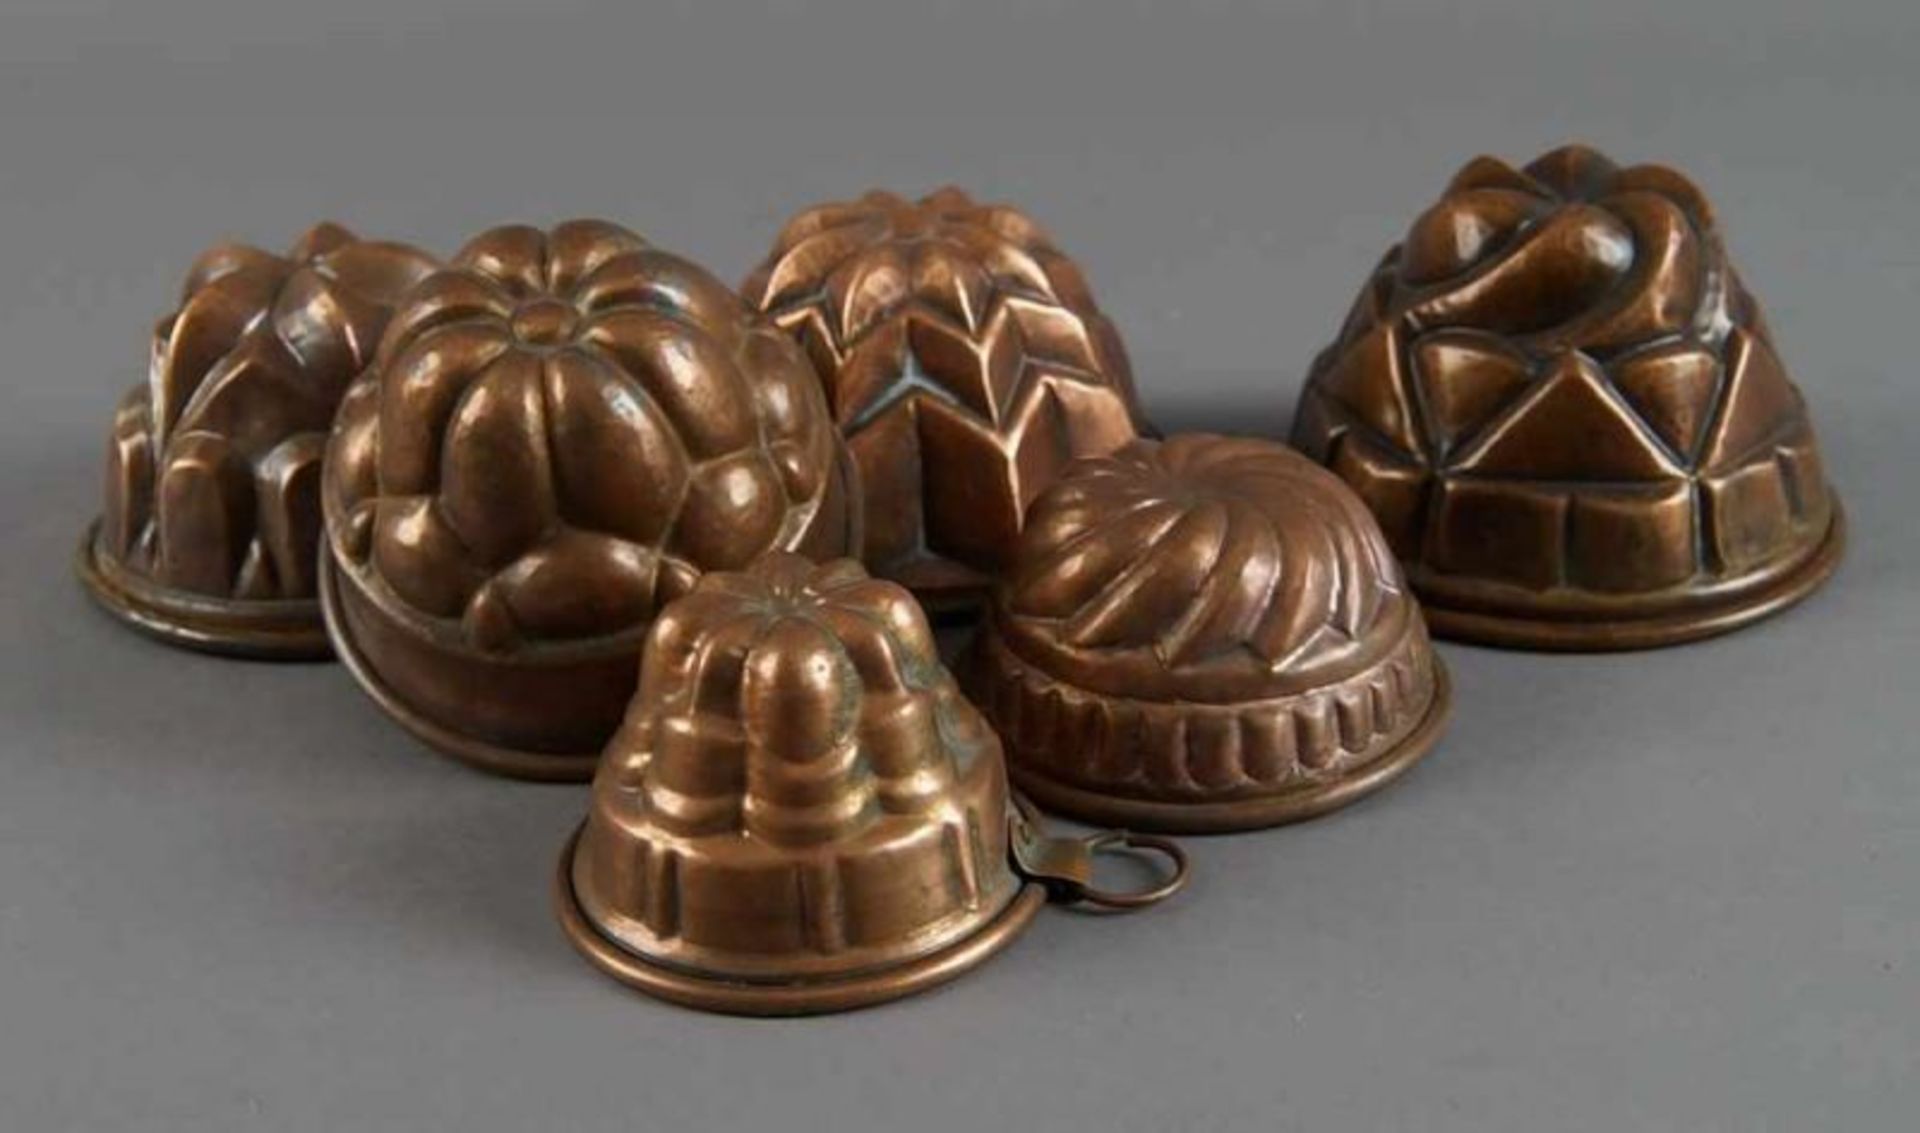 Sechs Miniatur - Guglhupf/Kuchenformen aus Kupfer, Durchmesser von 8 - 13 cm 20.17 % buyer's premium - Bild 2 aus 5